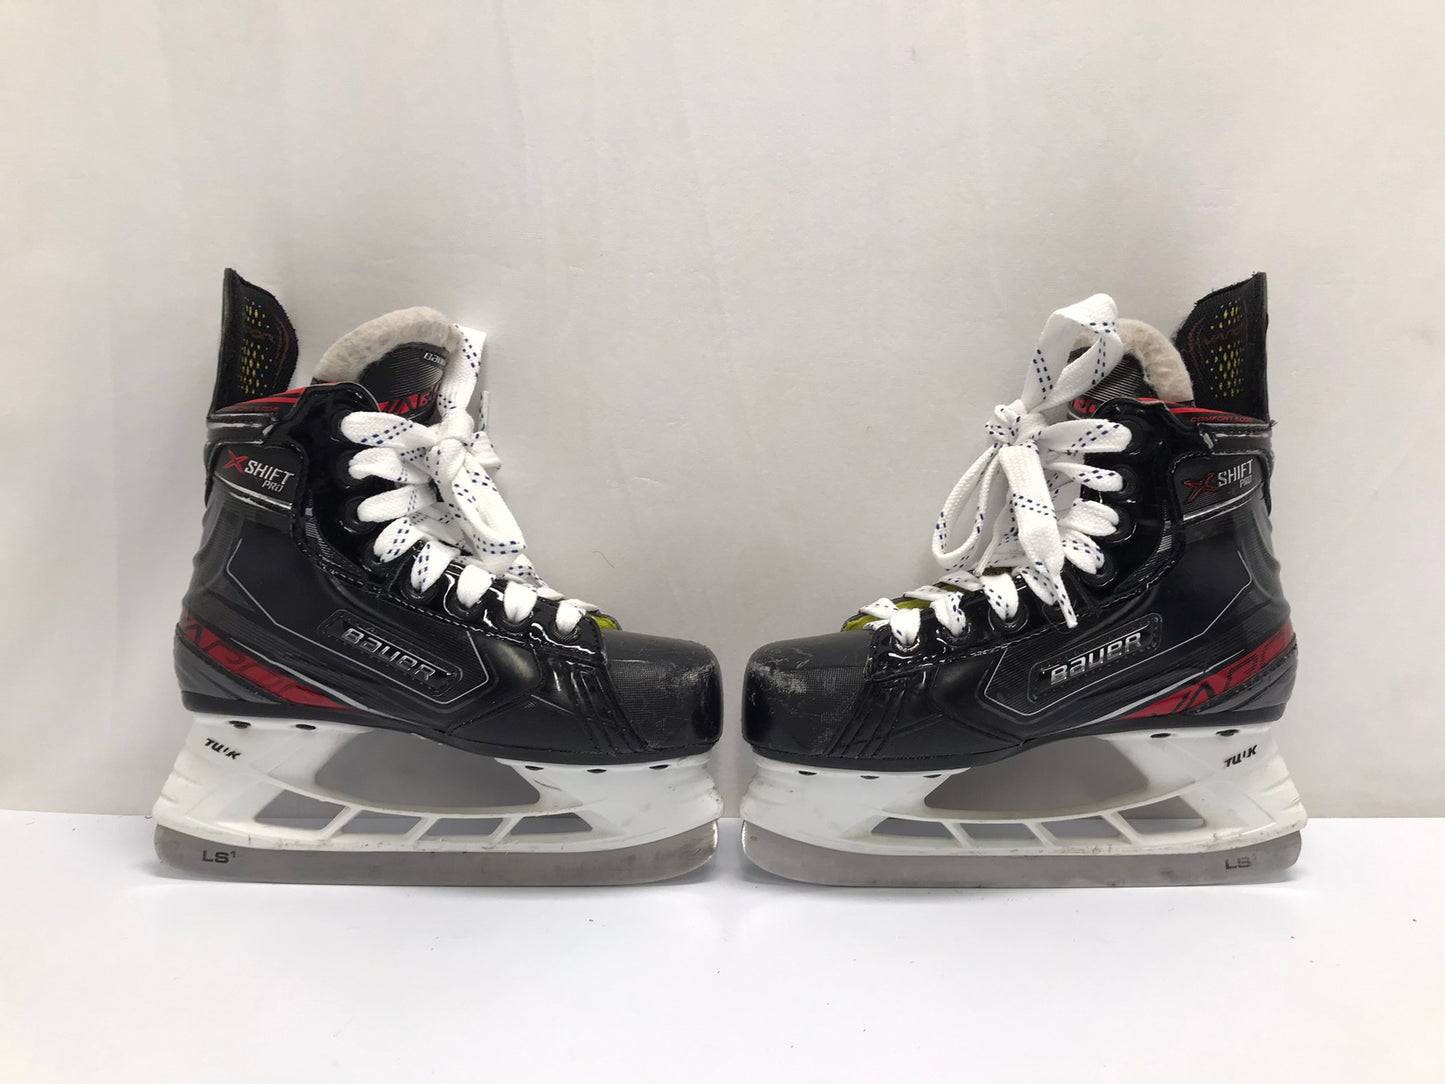 Hockey Skates Child Size 1.5 Shoe Size Bauer Vapor